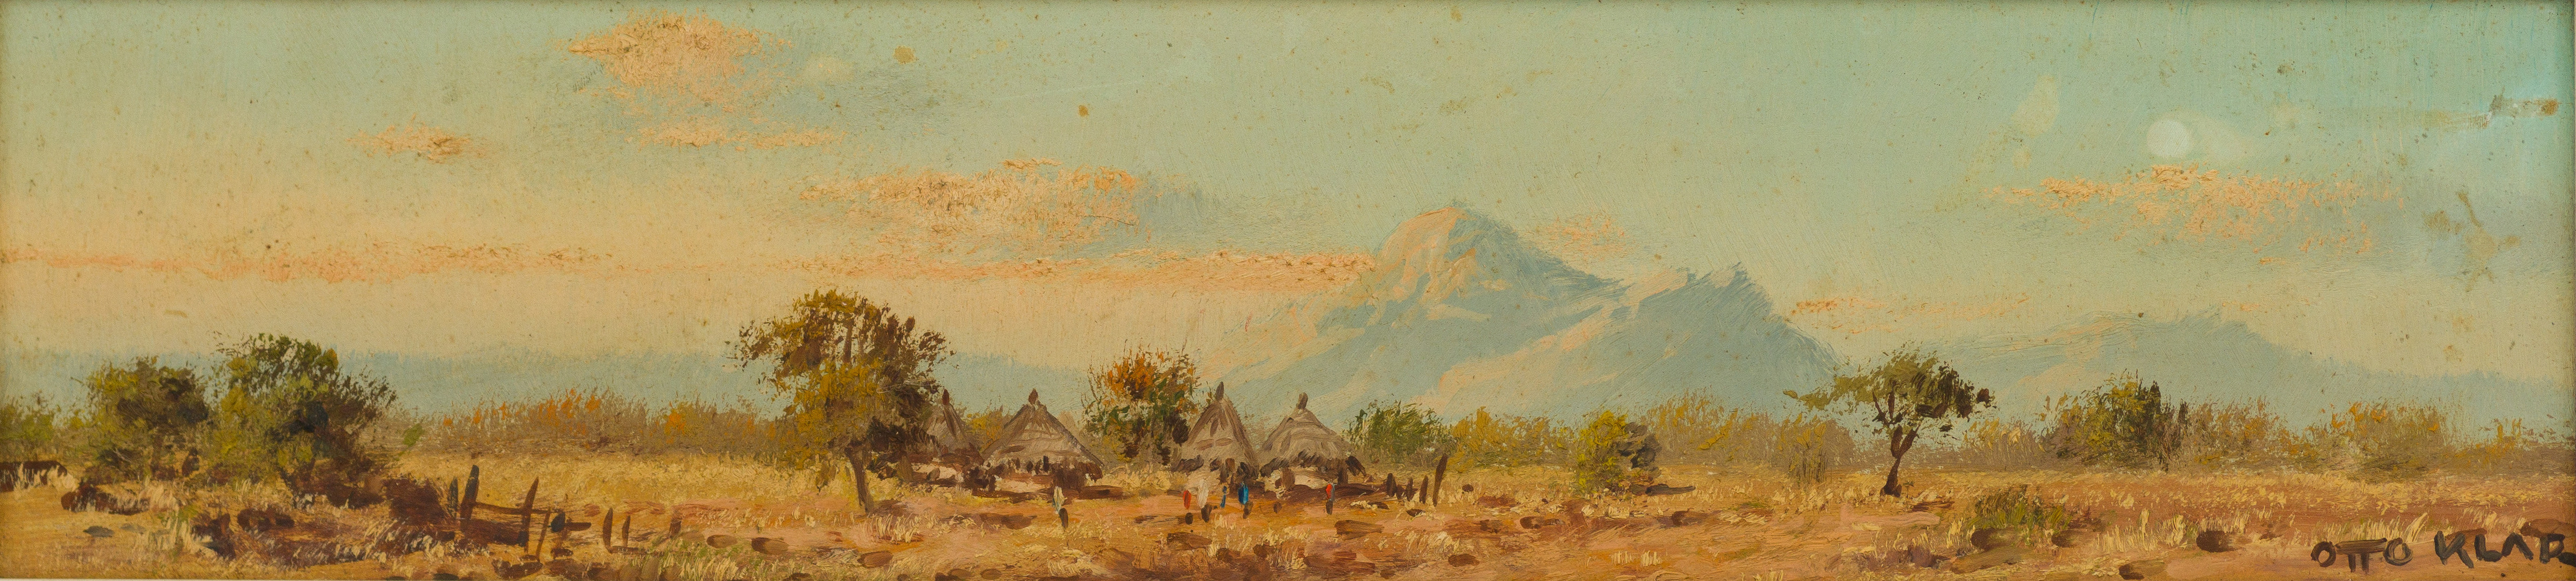 Otto Klar; Landscape with Huts